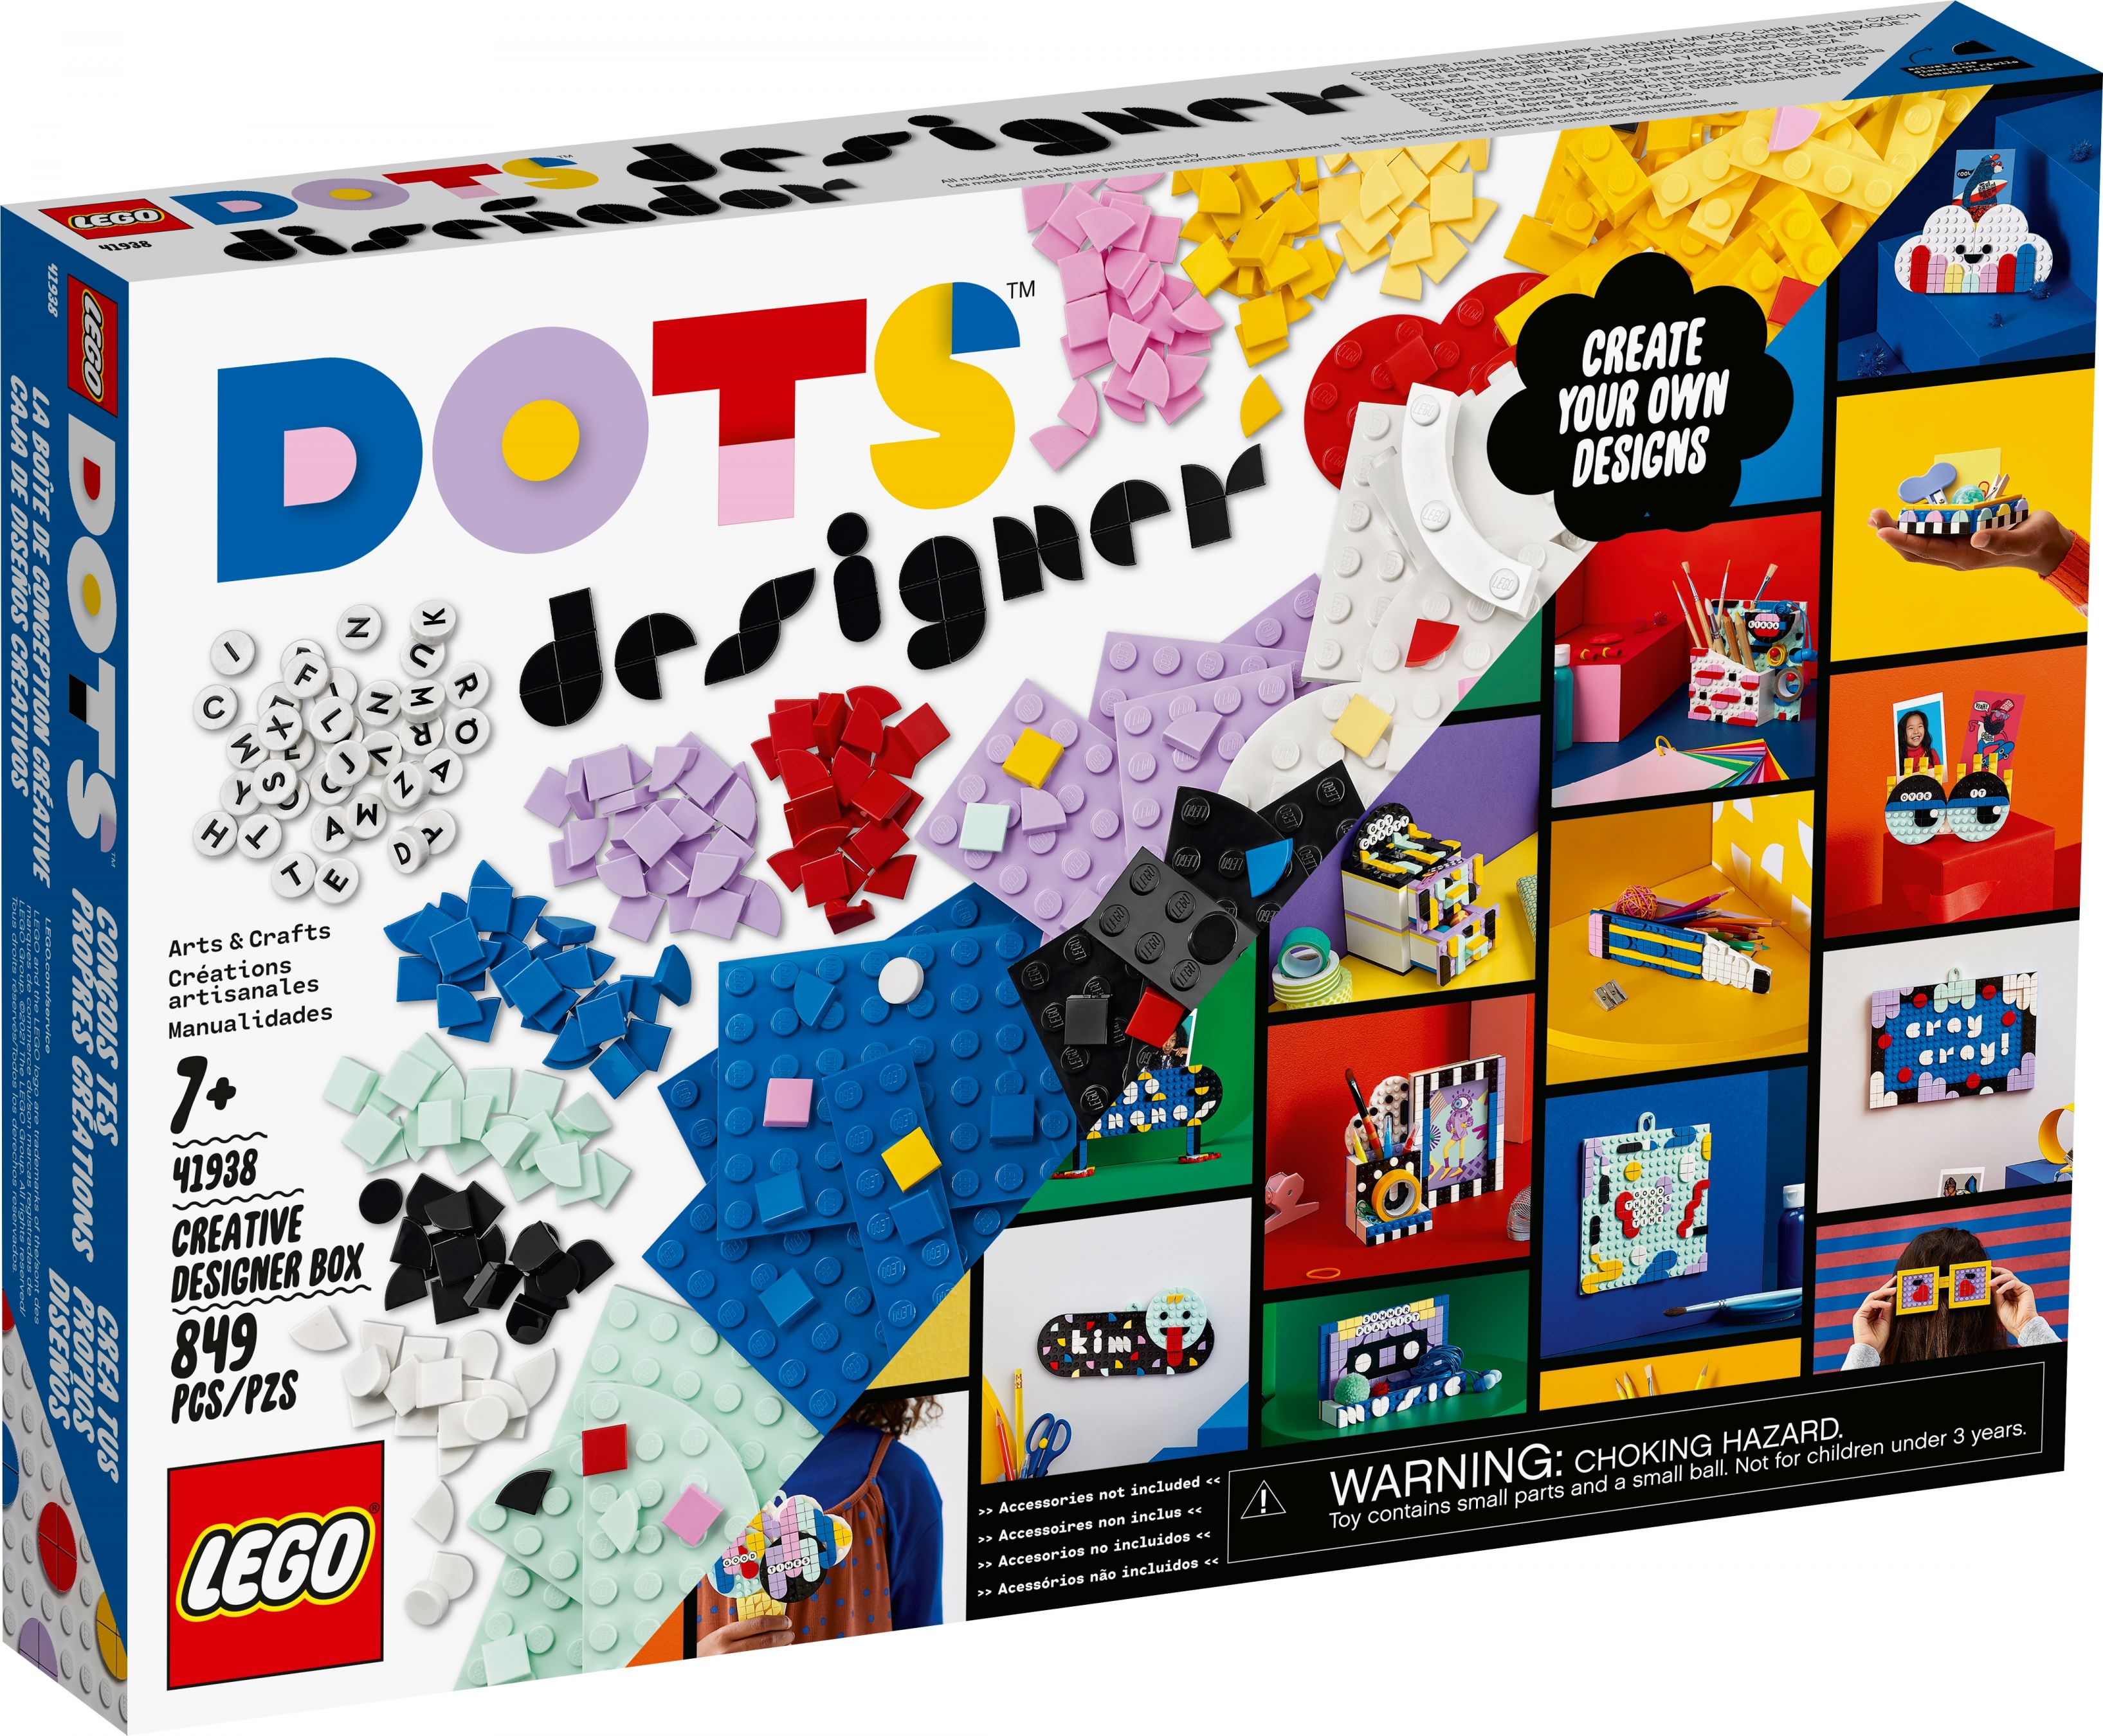 LEGO Dots 41938 Ultimatives Designer-Set LEGO_41938_alt1.jpg